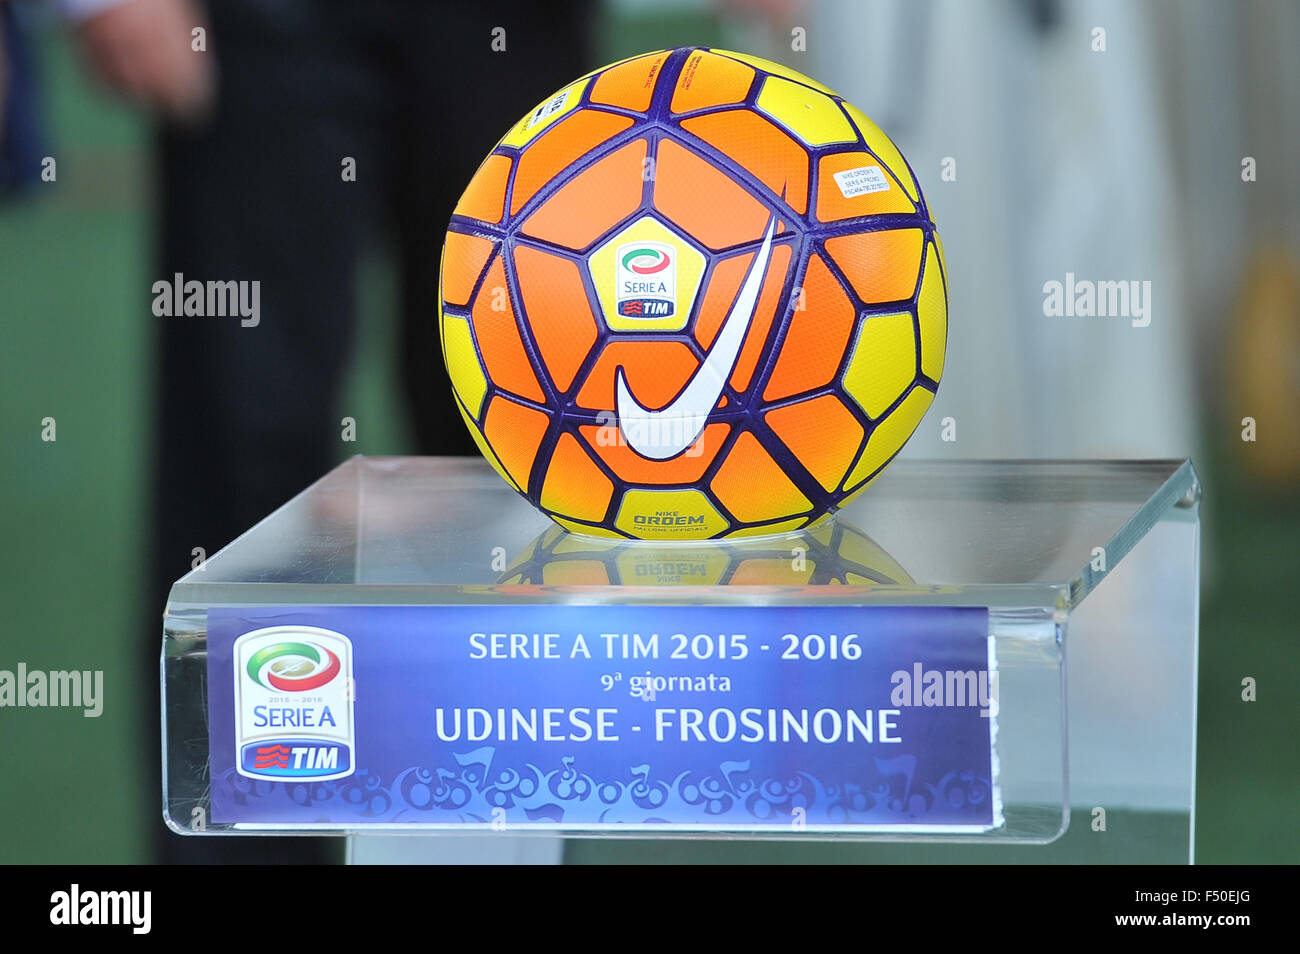 Serie calcio italiana immagini e fotografie stock ad alta risoluzione -  Alamy